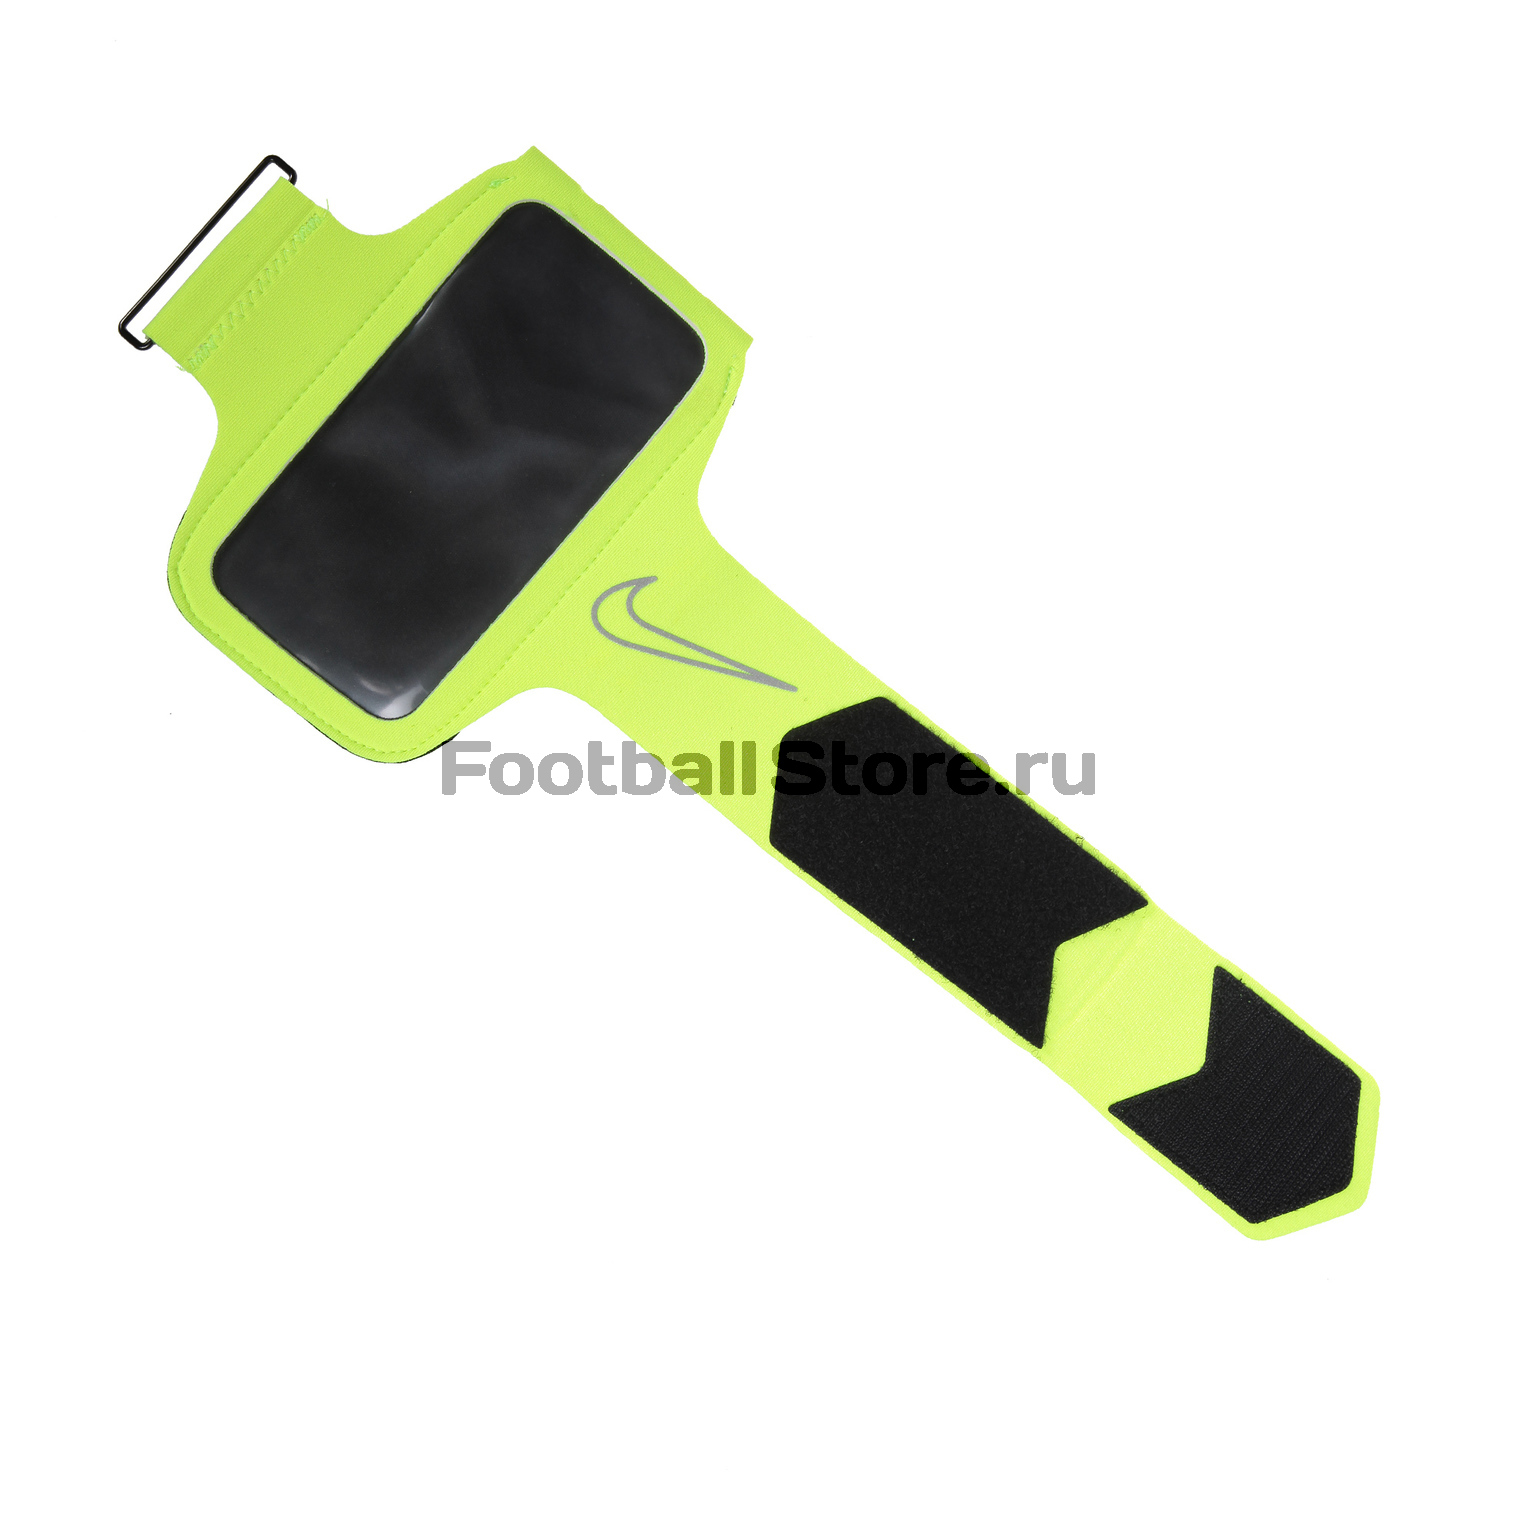 Чехол для Iphone 5/5S на руку Nike Lightweight Arm Band 2.0 N.RN.43.715.OS